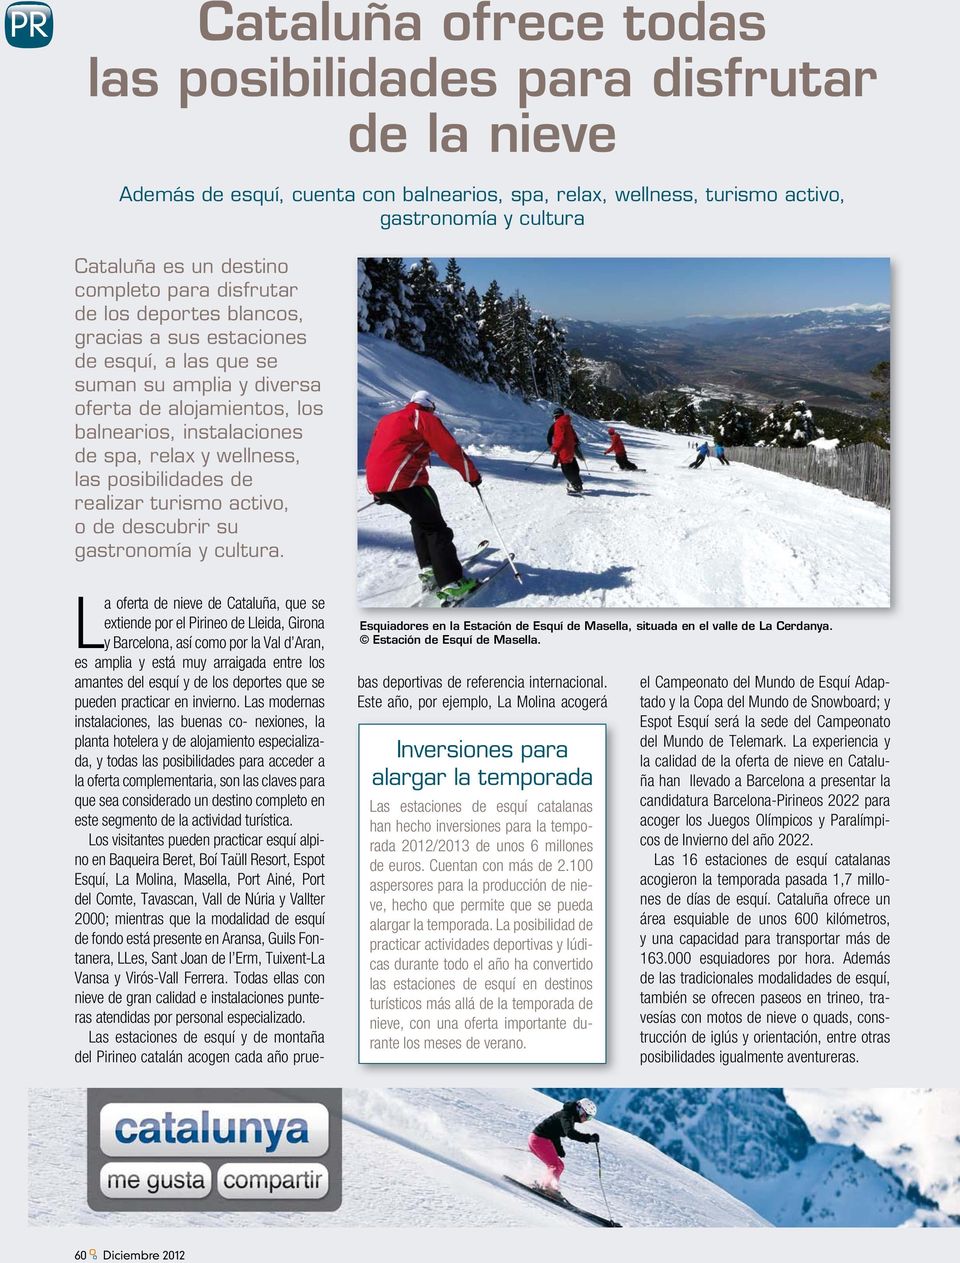 wellness, las posibilidades de realizar turismo activo, o de descubrir su gastronomía y cultura. Esquiadores en la Estación de Esquí de Masella, situada en el valle de La Cerdanya.